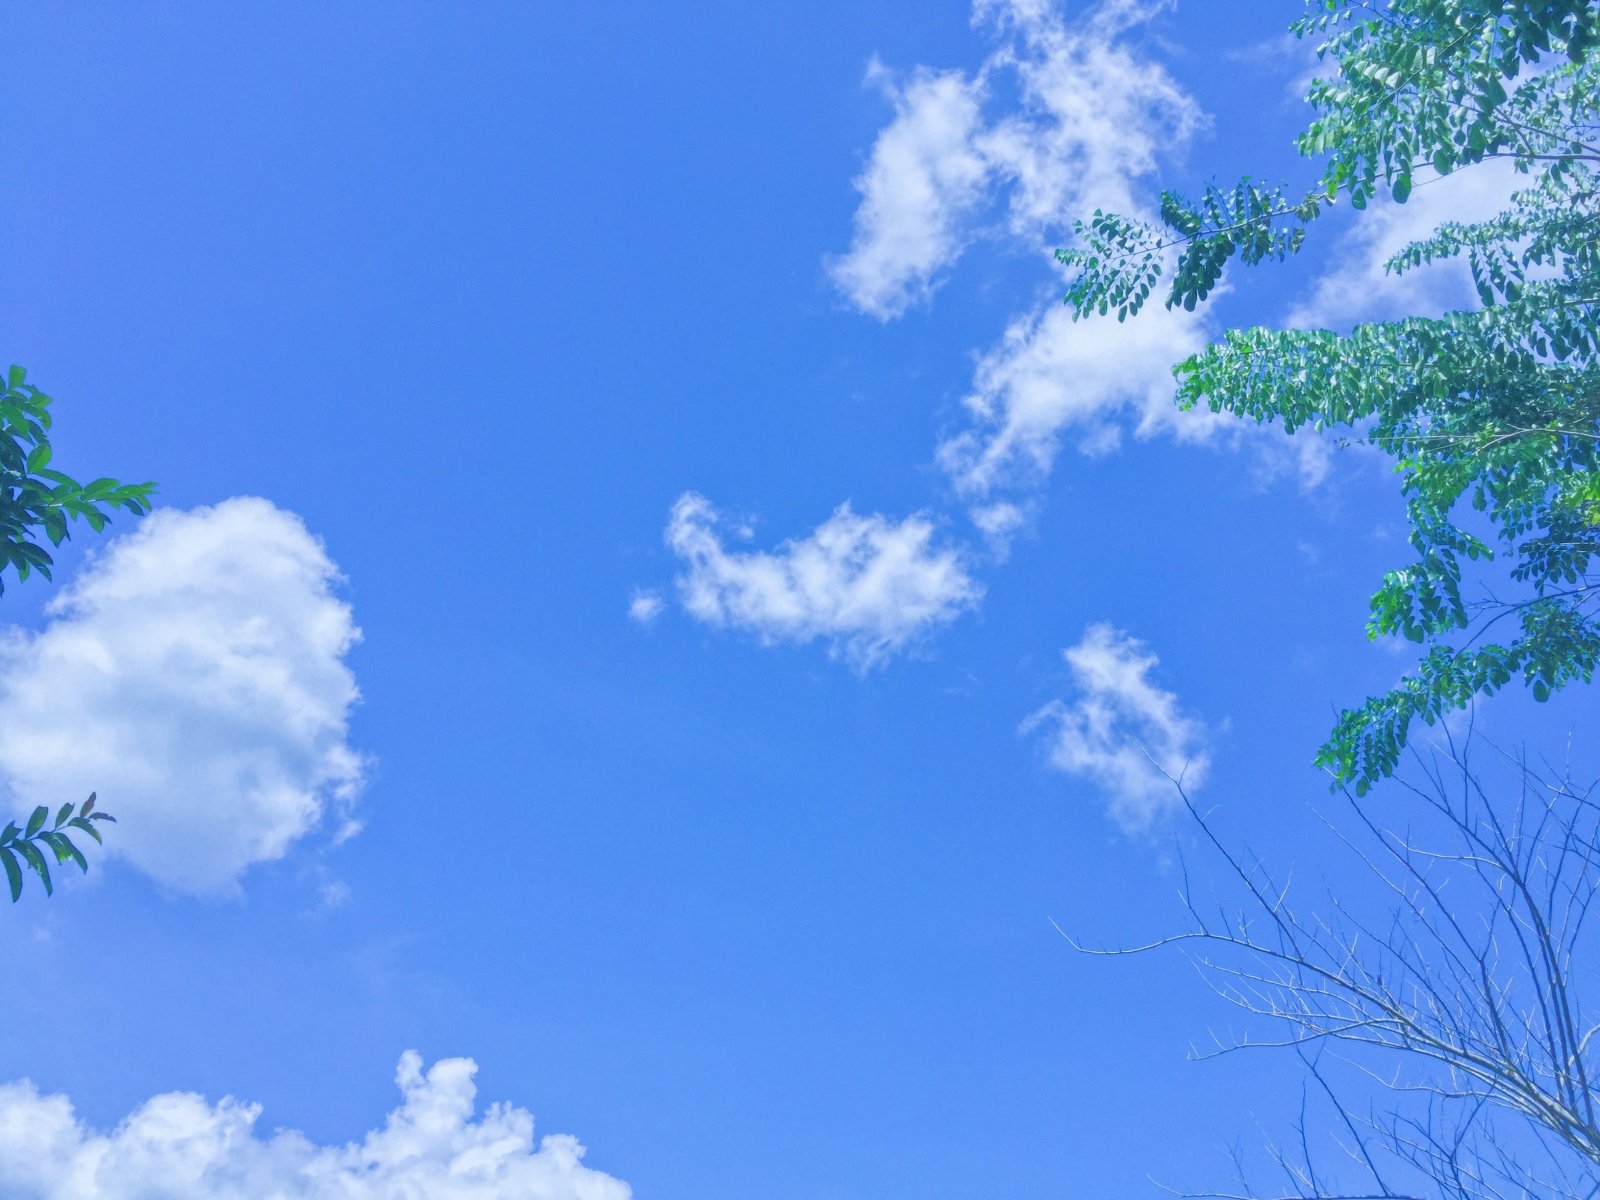 Áng mây: Khi ánh nắng tràn về, những đám mây trắng xóa thổi nhẹ trên bầu trời làm cho cảnh sắc trở nên thật tuyệt đẹp. Hãy chiêm ngưỡng bức ảnh về những áng mây bay trôi giữa bầu trời, cảm nhận tình cảm yên bình chốn thiên nhiên.